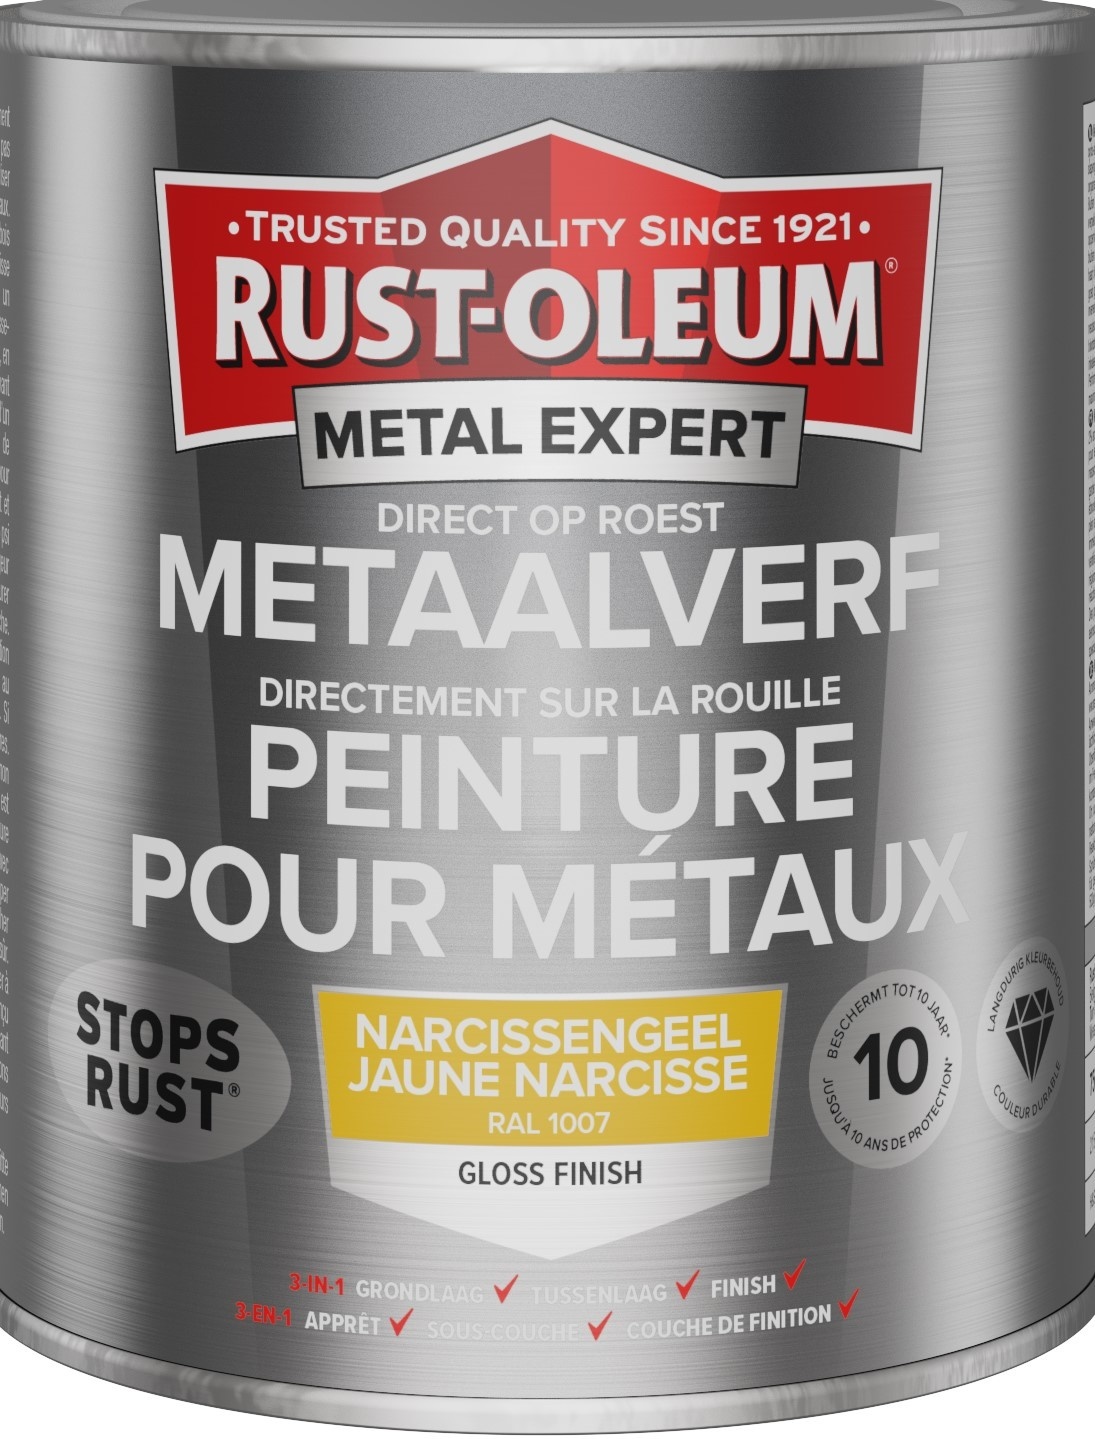 Rust-Oleum Metalexpert Direct Op Roest Metaalverf - Gloss - Ral1007 400ml Spuitbus